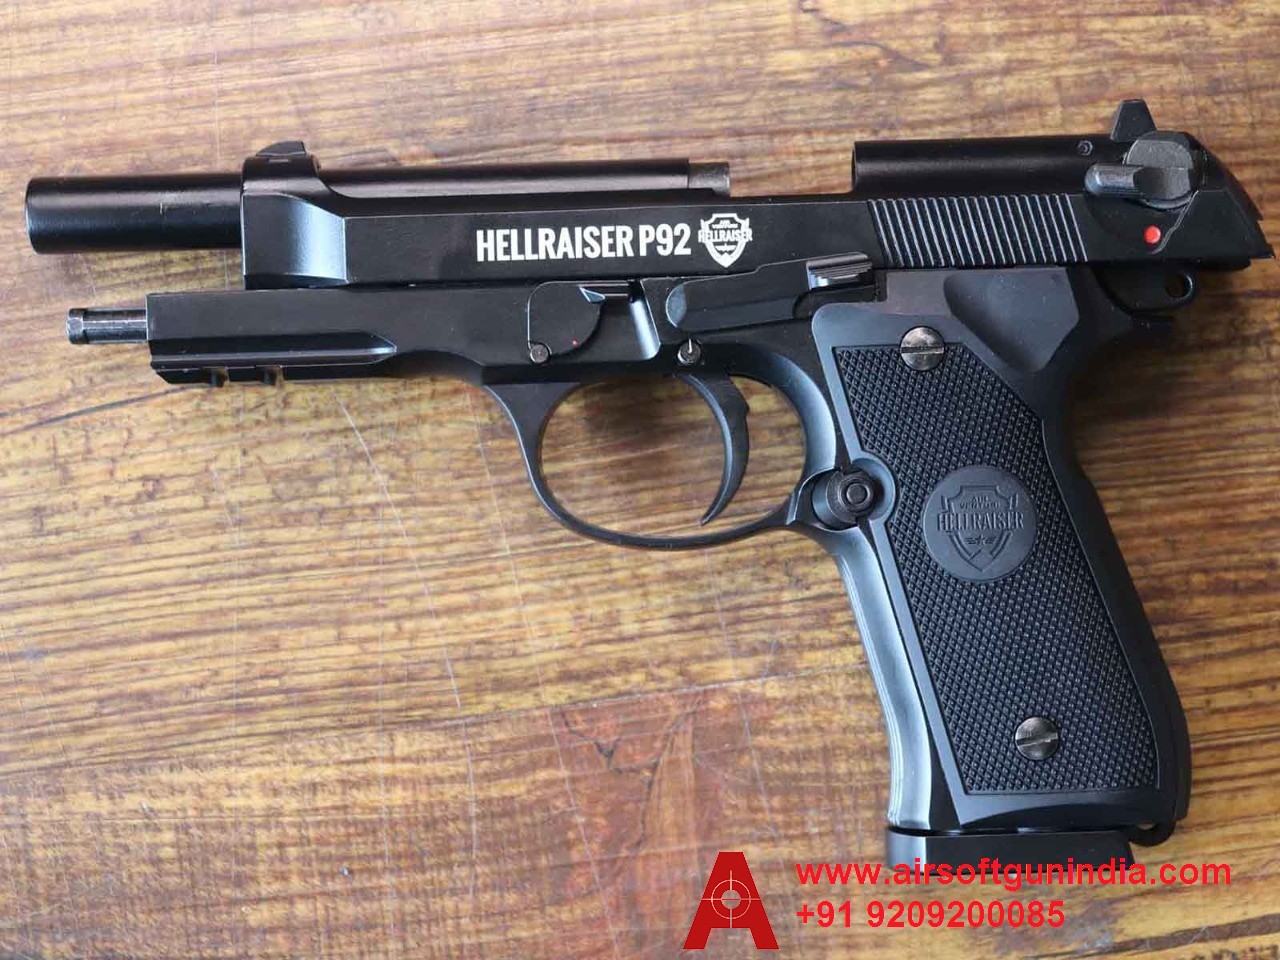 Hellraiser P92 M92A1 CO2 BB .177Cal, 4.5mm Air Pistol By Airsoft Gun India